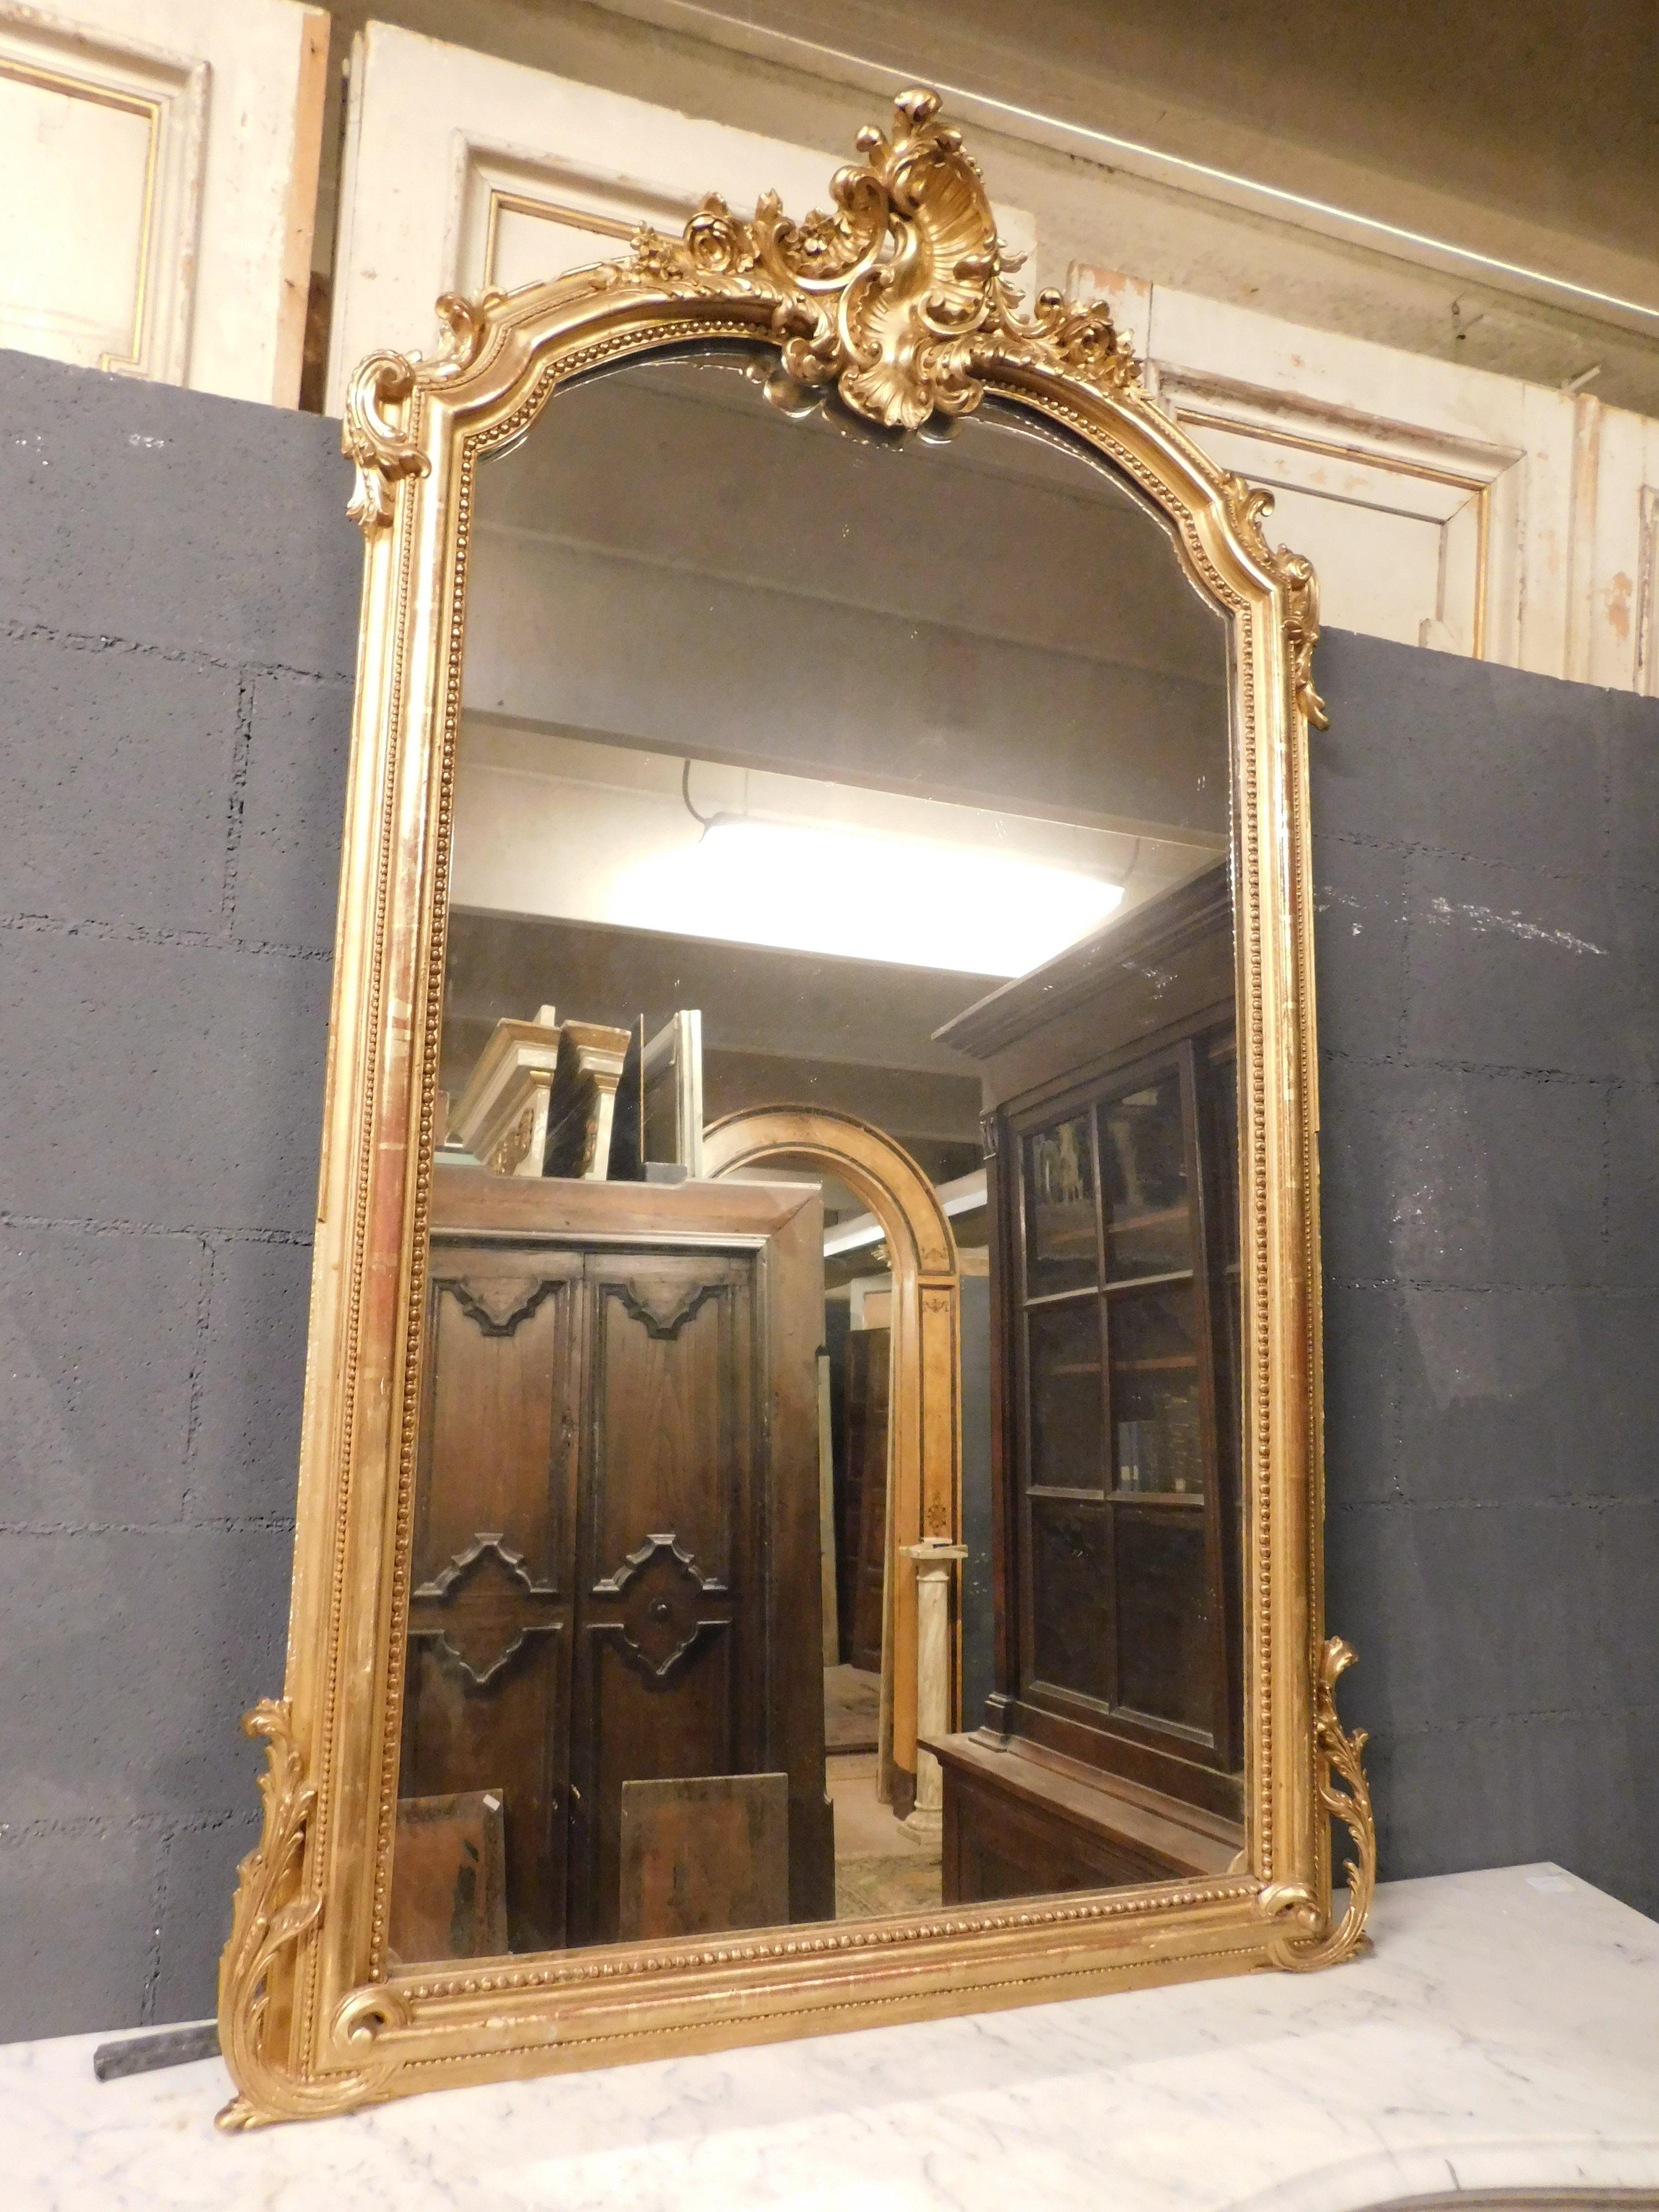 Miroir ancien en bois doré avec une frise richement sculptée, au sommet il y a une belle sculpture et des volutes sur les côtés, construit au 19ème siècle en France, il était à l'origine placé au-dessus d'une cheminée, maintenant adaptable aussi